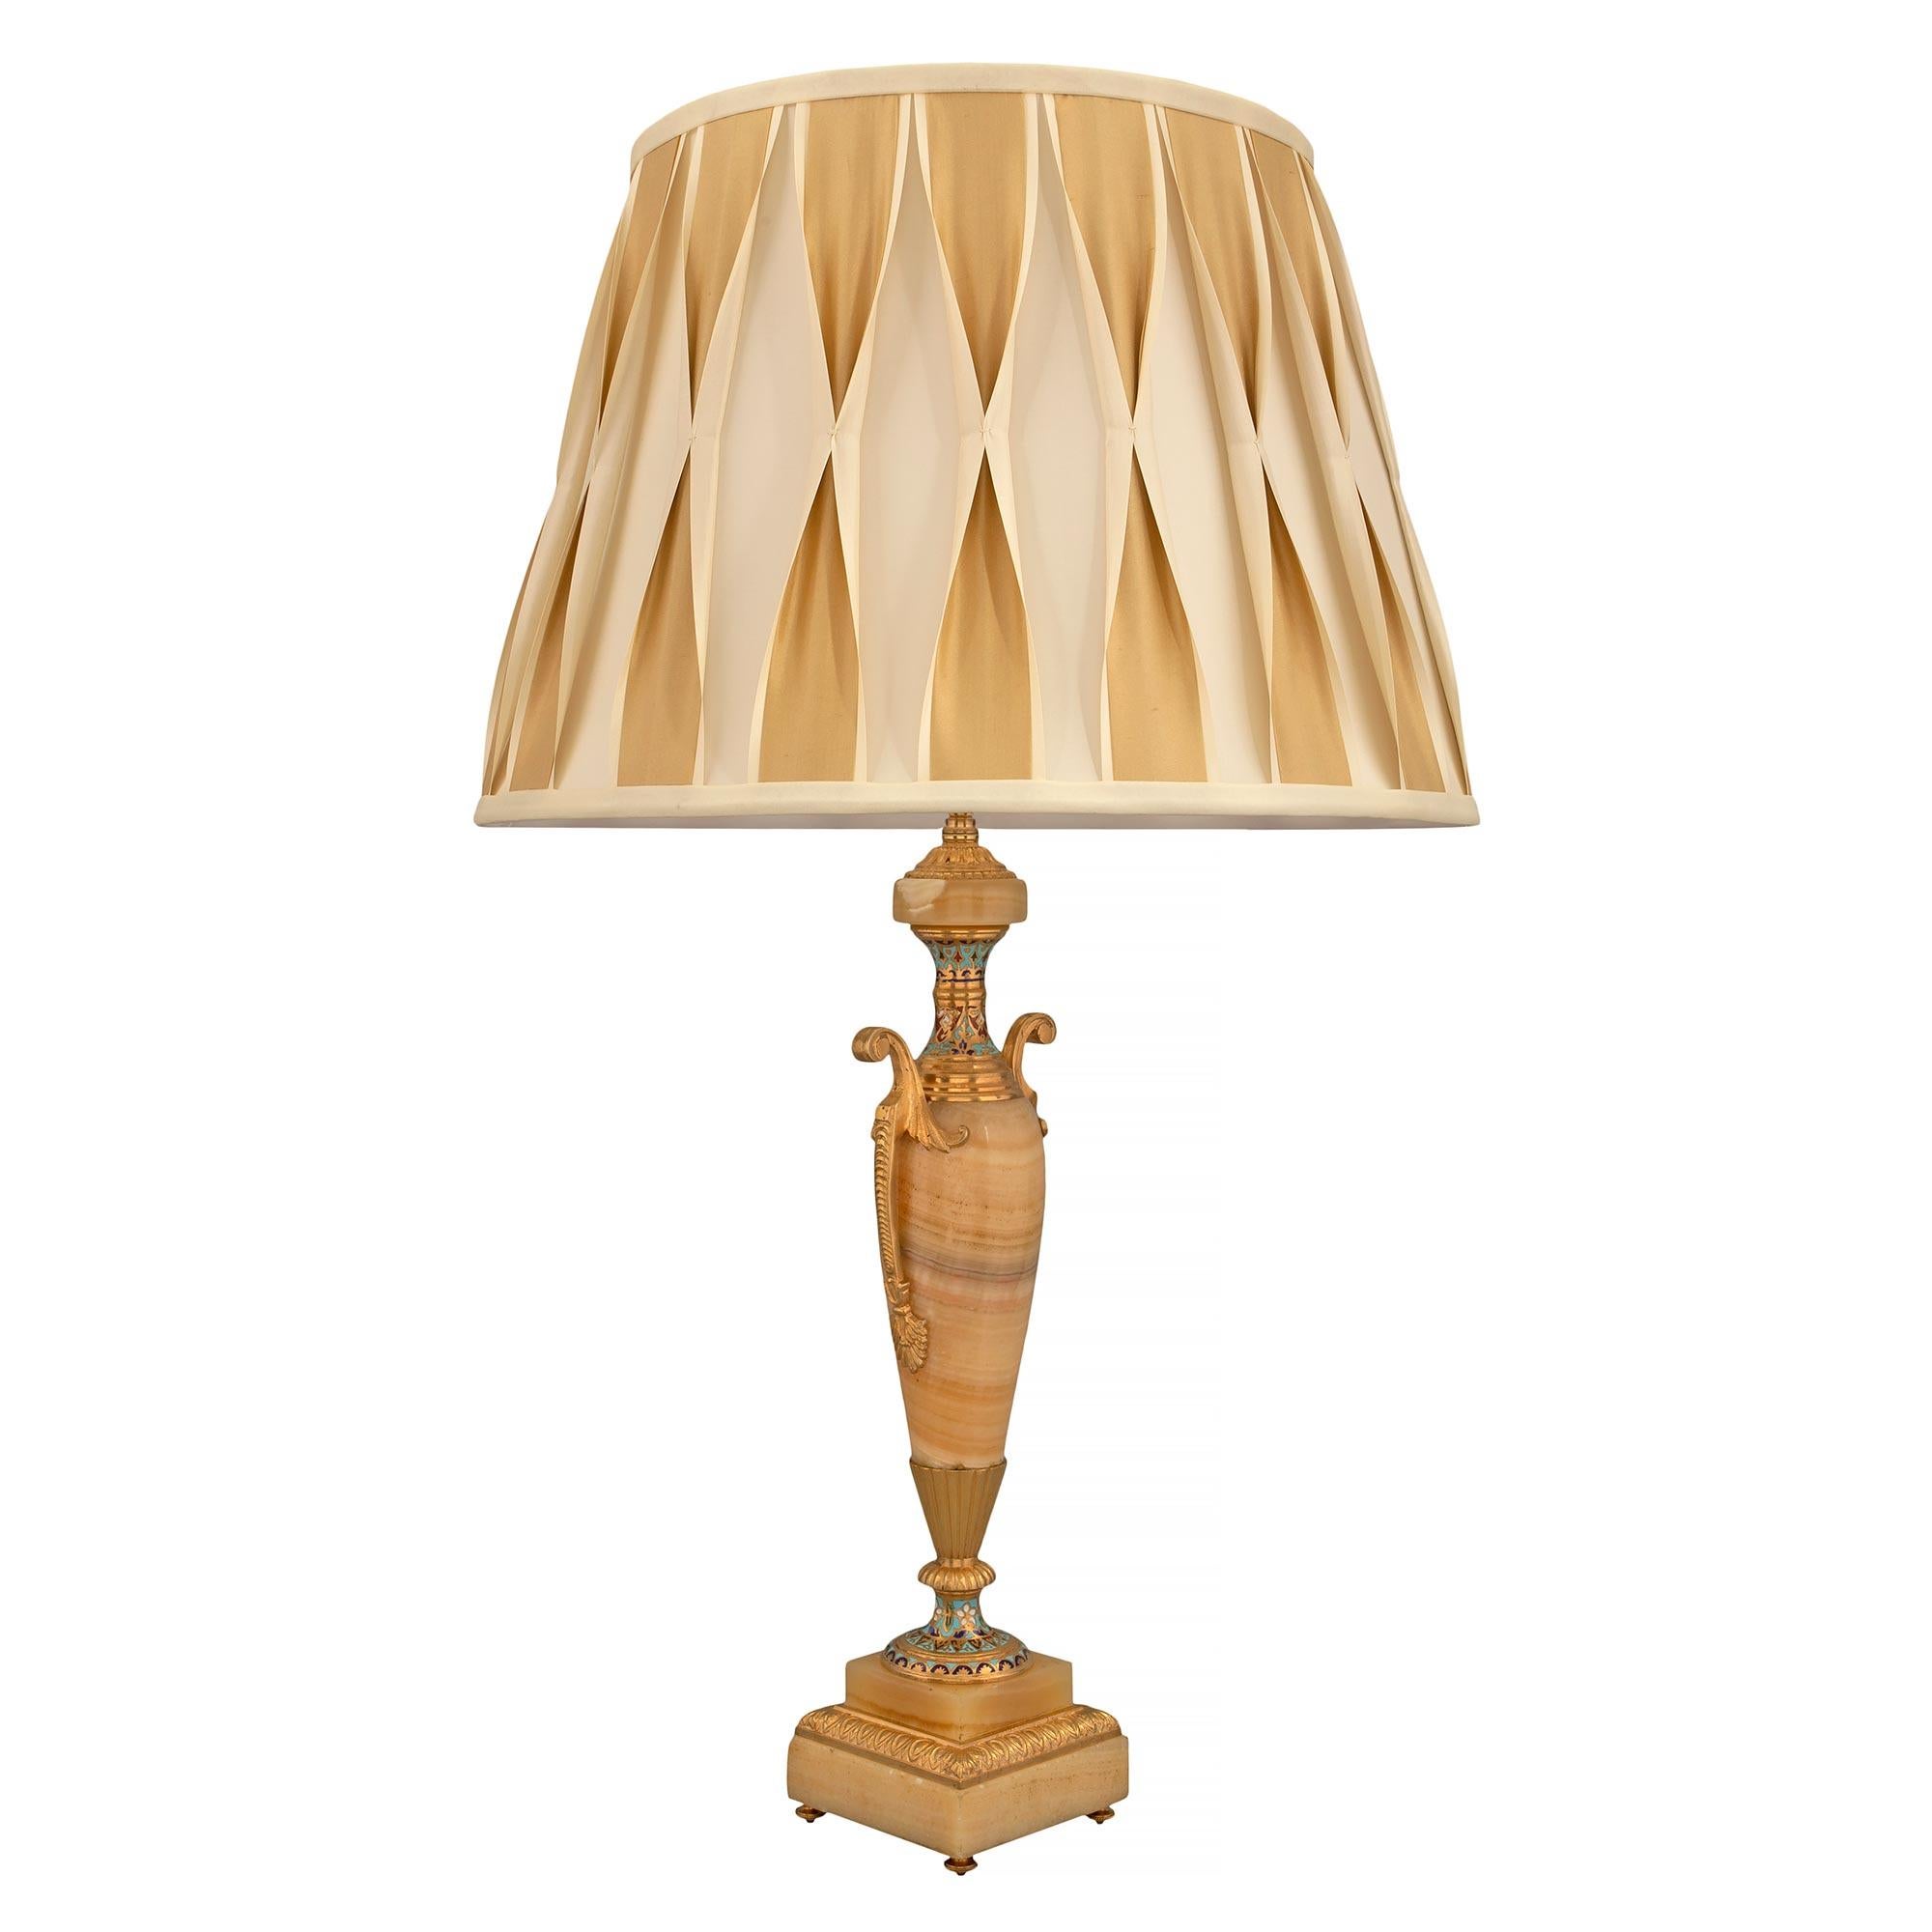 Paire de lampes néoclassiques françaises du 19ème siècle en onyx, bronze doré et cloisonné. Chaque lampe est surélevée par de fins pieds en forme de topie en bronze doré sous la base carrée en onyx avec une élégante bande enveloppante en bronze doré